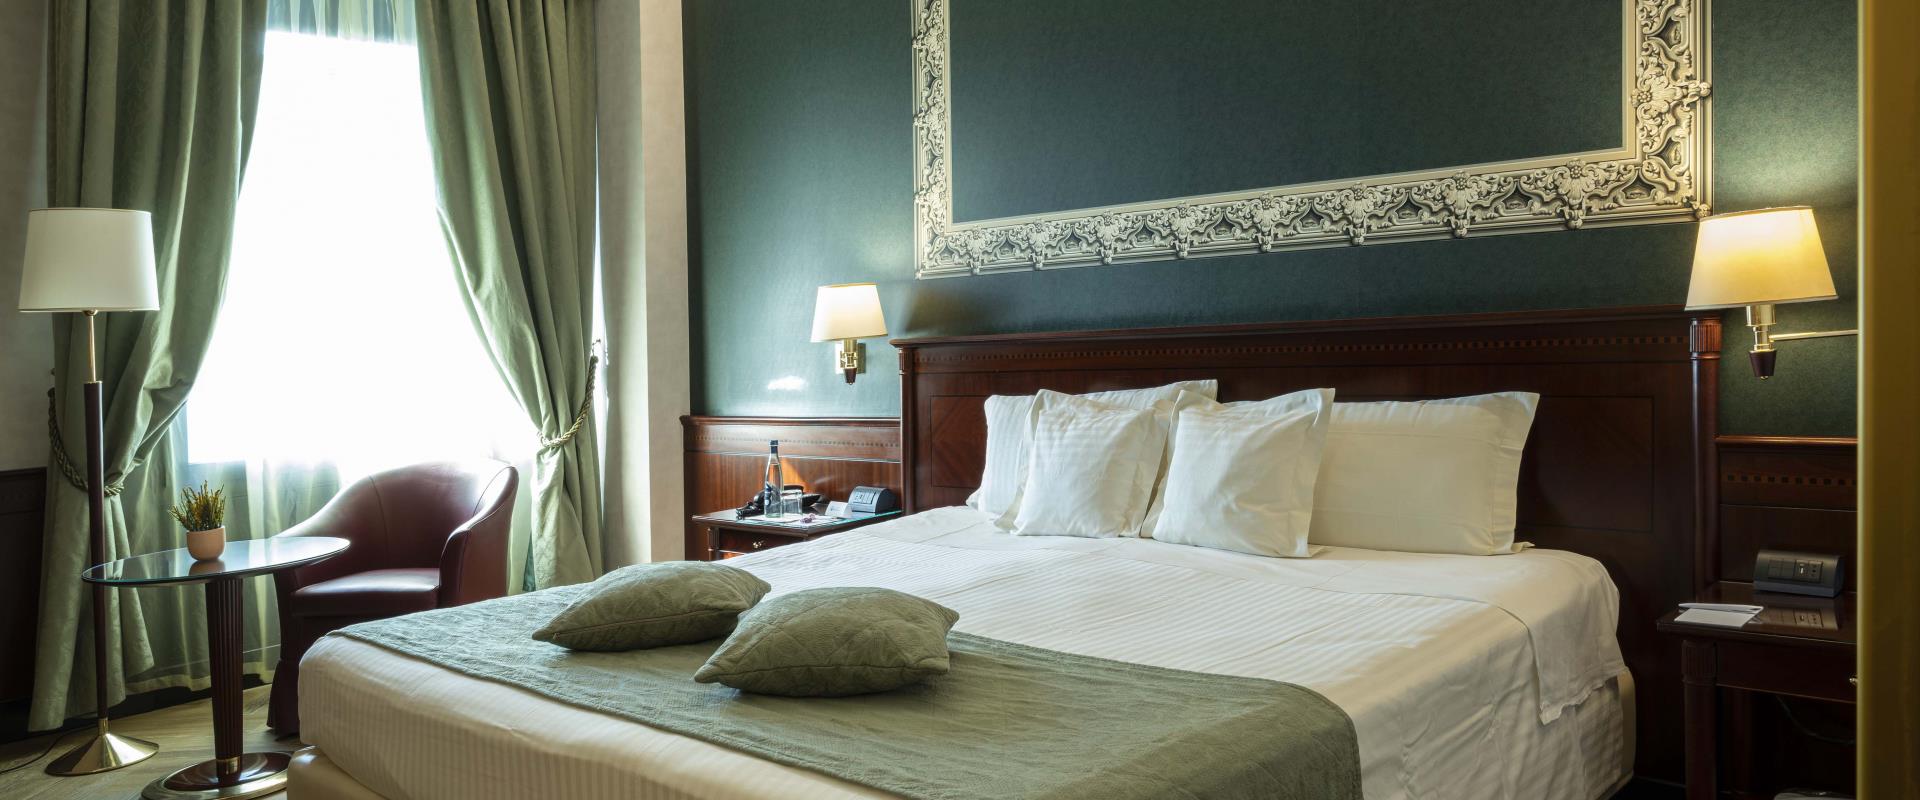 Superior Room - Antares Hotel Concorde Milan